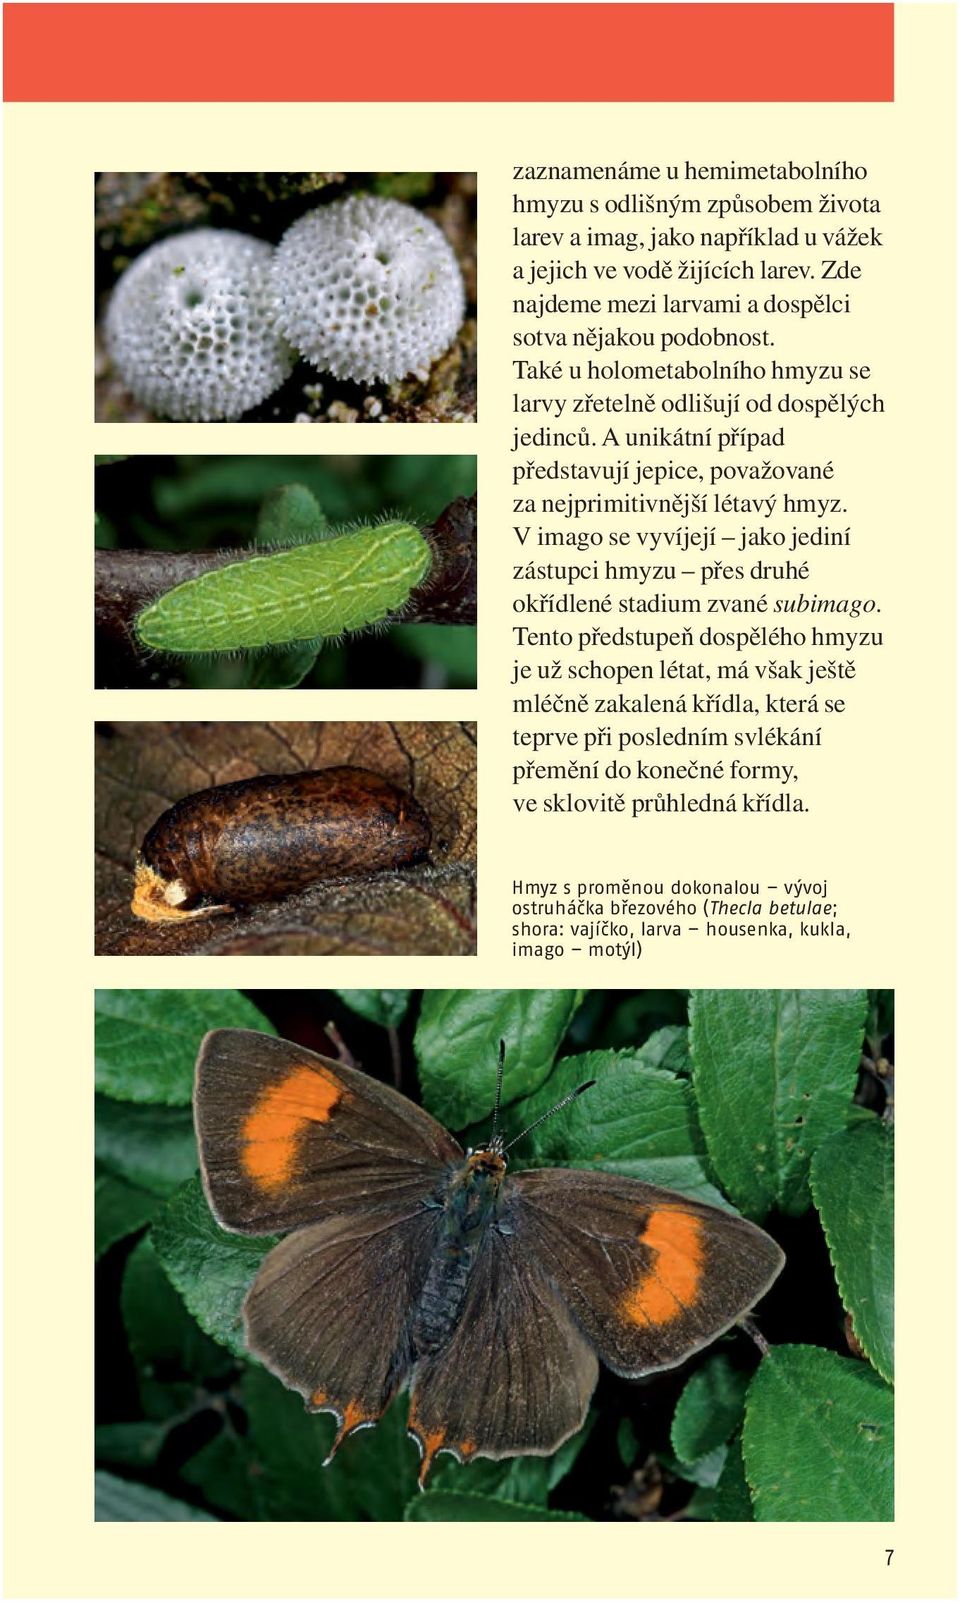 A unikátní případ představují jepice, považované za nejprimitivnější létavý hmyz. V imago se vyvíjejí jako jediní zástupci hmyzu přes druhé okřídlené stadium zvané subimago.